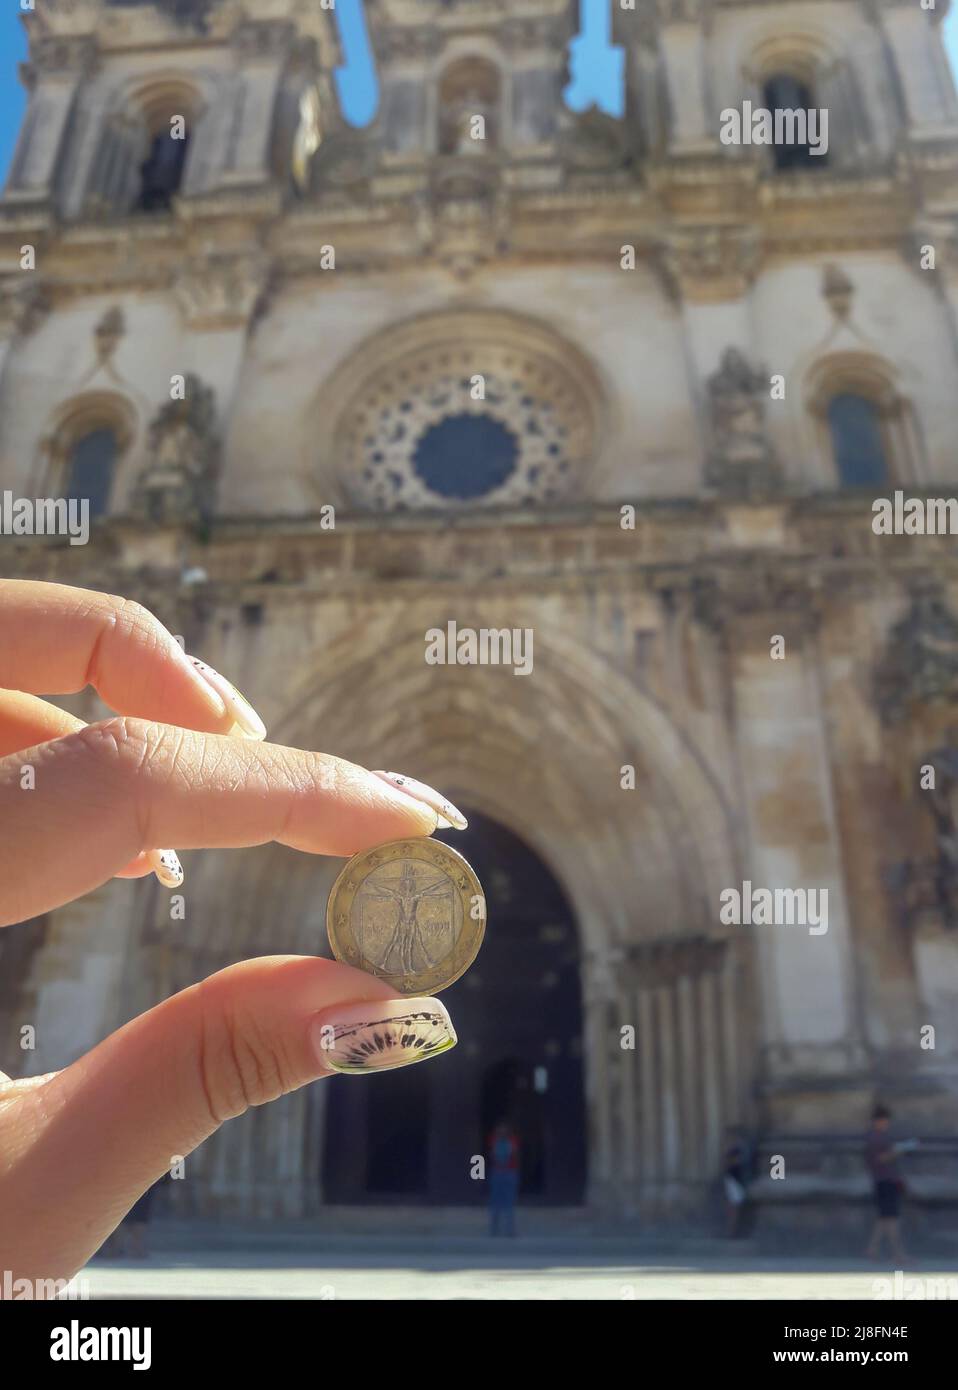 Mano sosteniendo una moneda con la imagen del Hombre Vitruviano en el fondo de un edificio antiguo Foto de stock